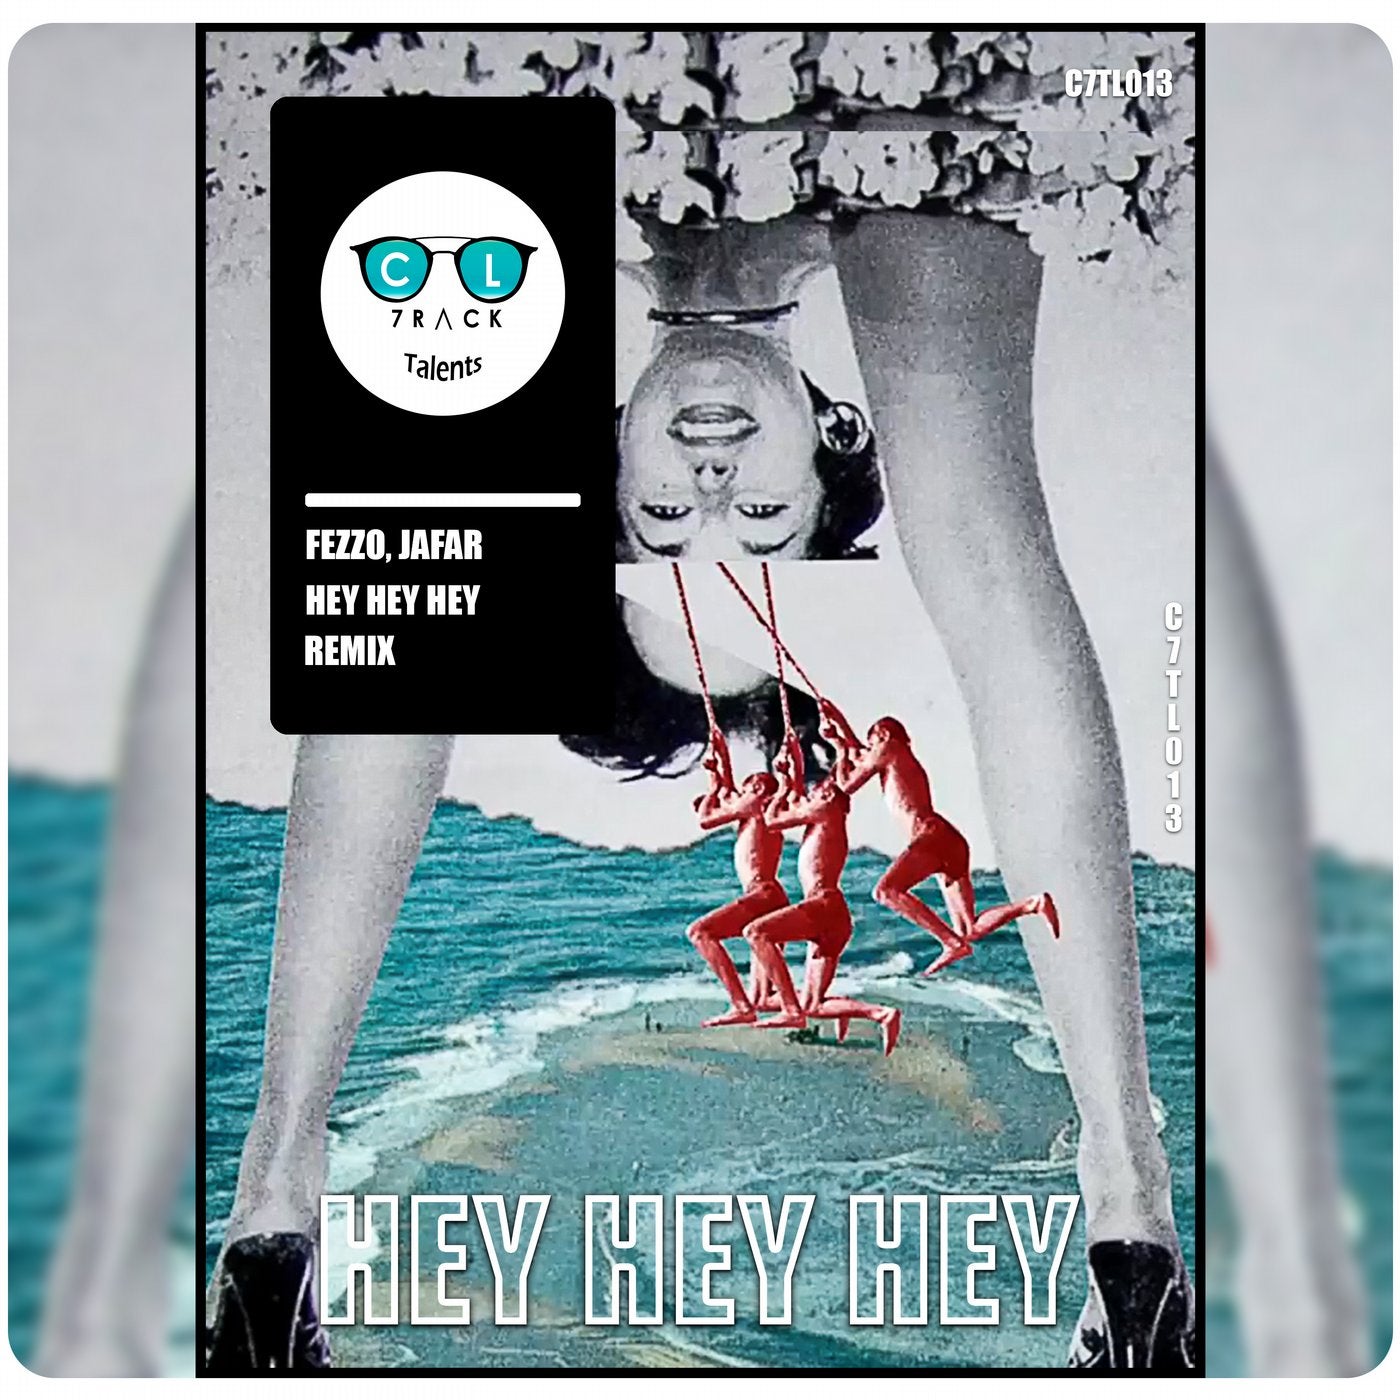 Hey Hey Hey (Remix)